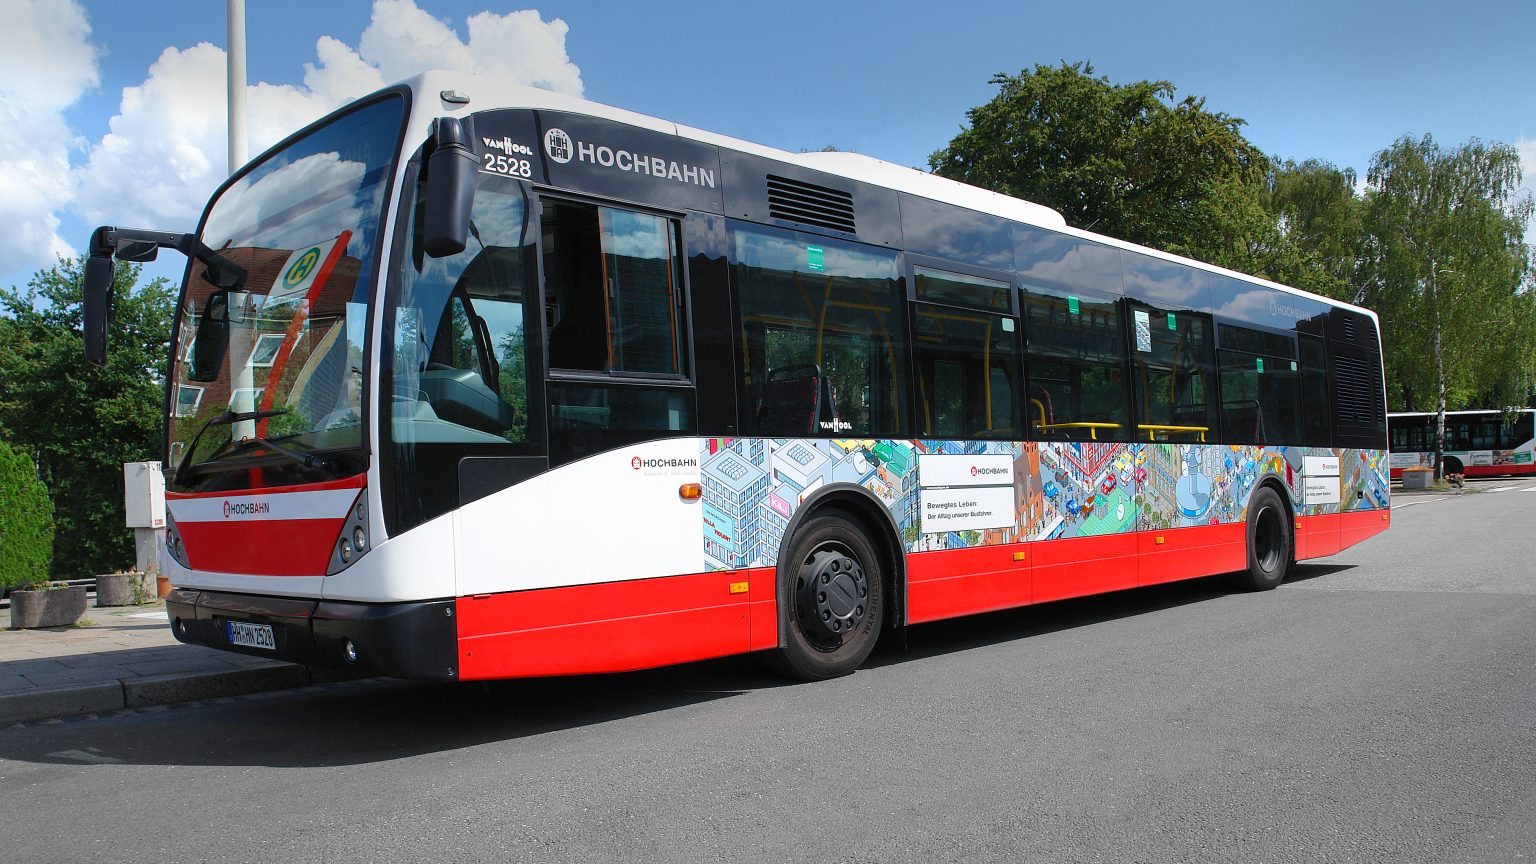 Ambient-Media Busgestaltung mit Pixel-Illustration zur Hochbahn Busfahrer-Kampagne